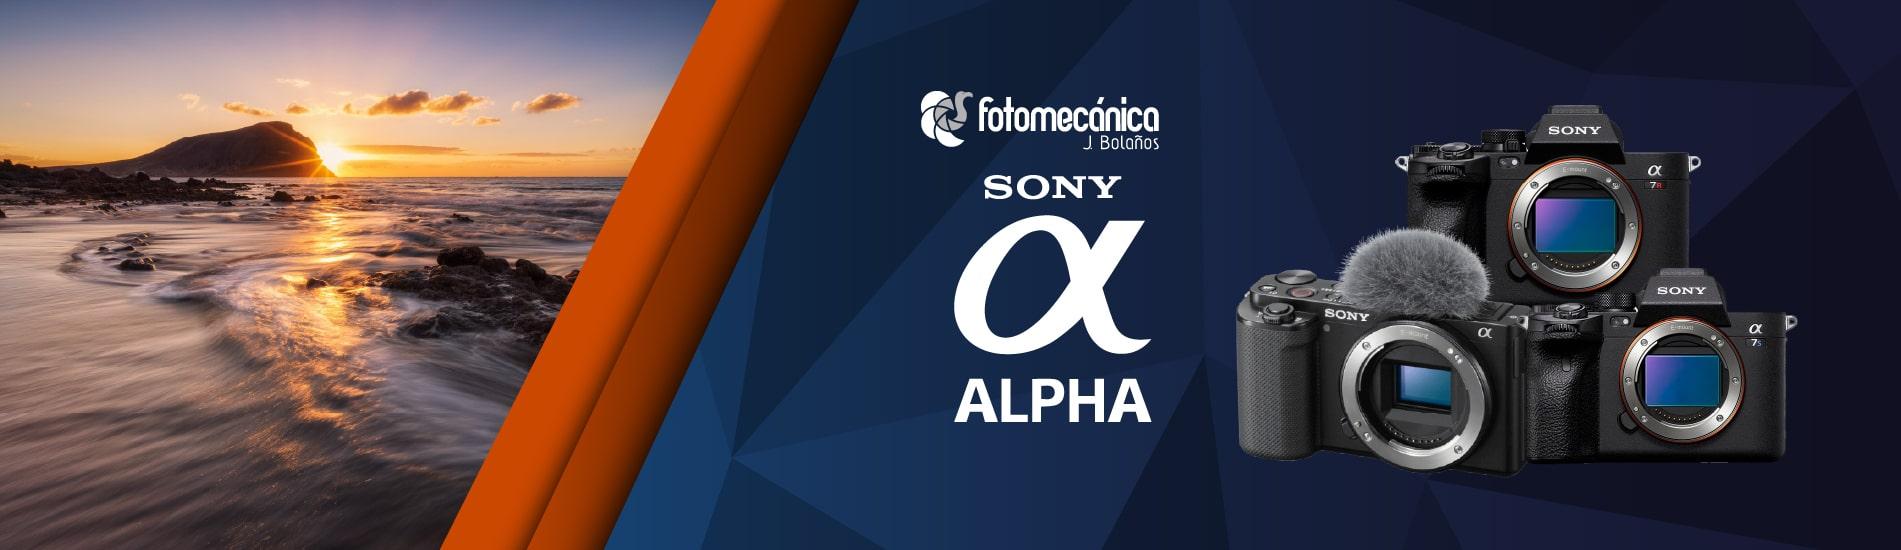 Fotomecánica J. Bolaños Sony Alpha 2023 D